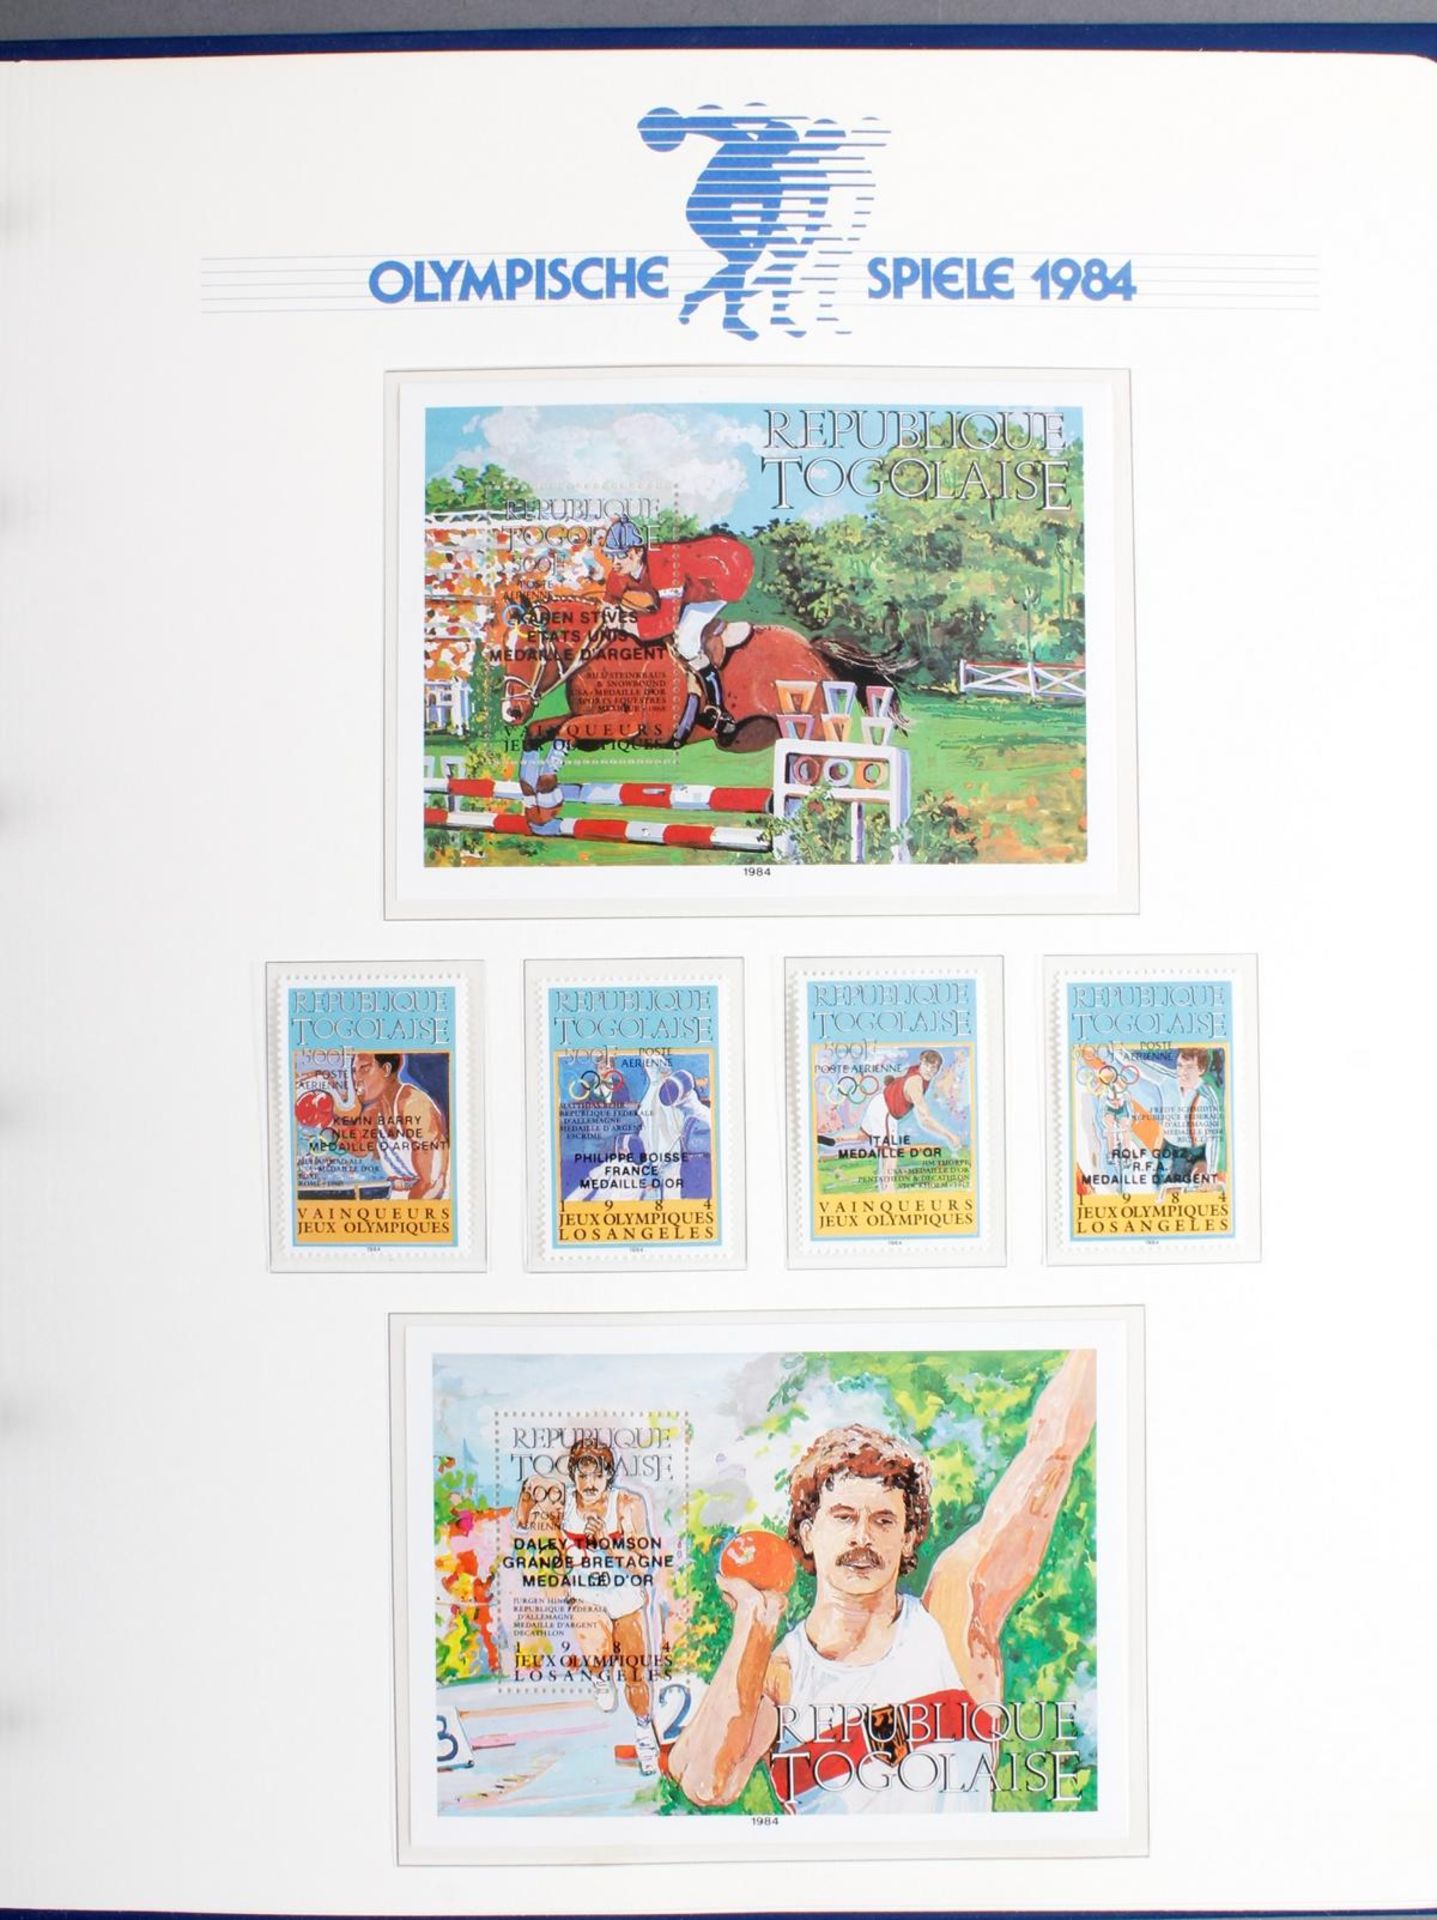 Abosammlung: Olympische Spiele 1984 Los Angeles - Image 8 of 9